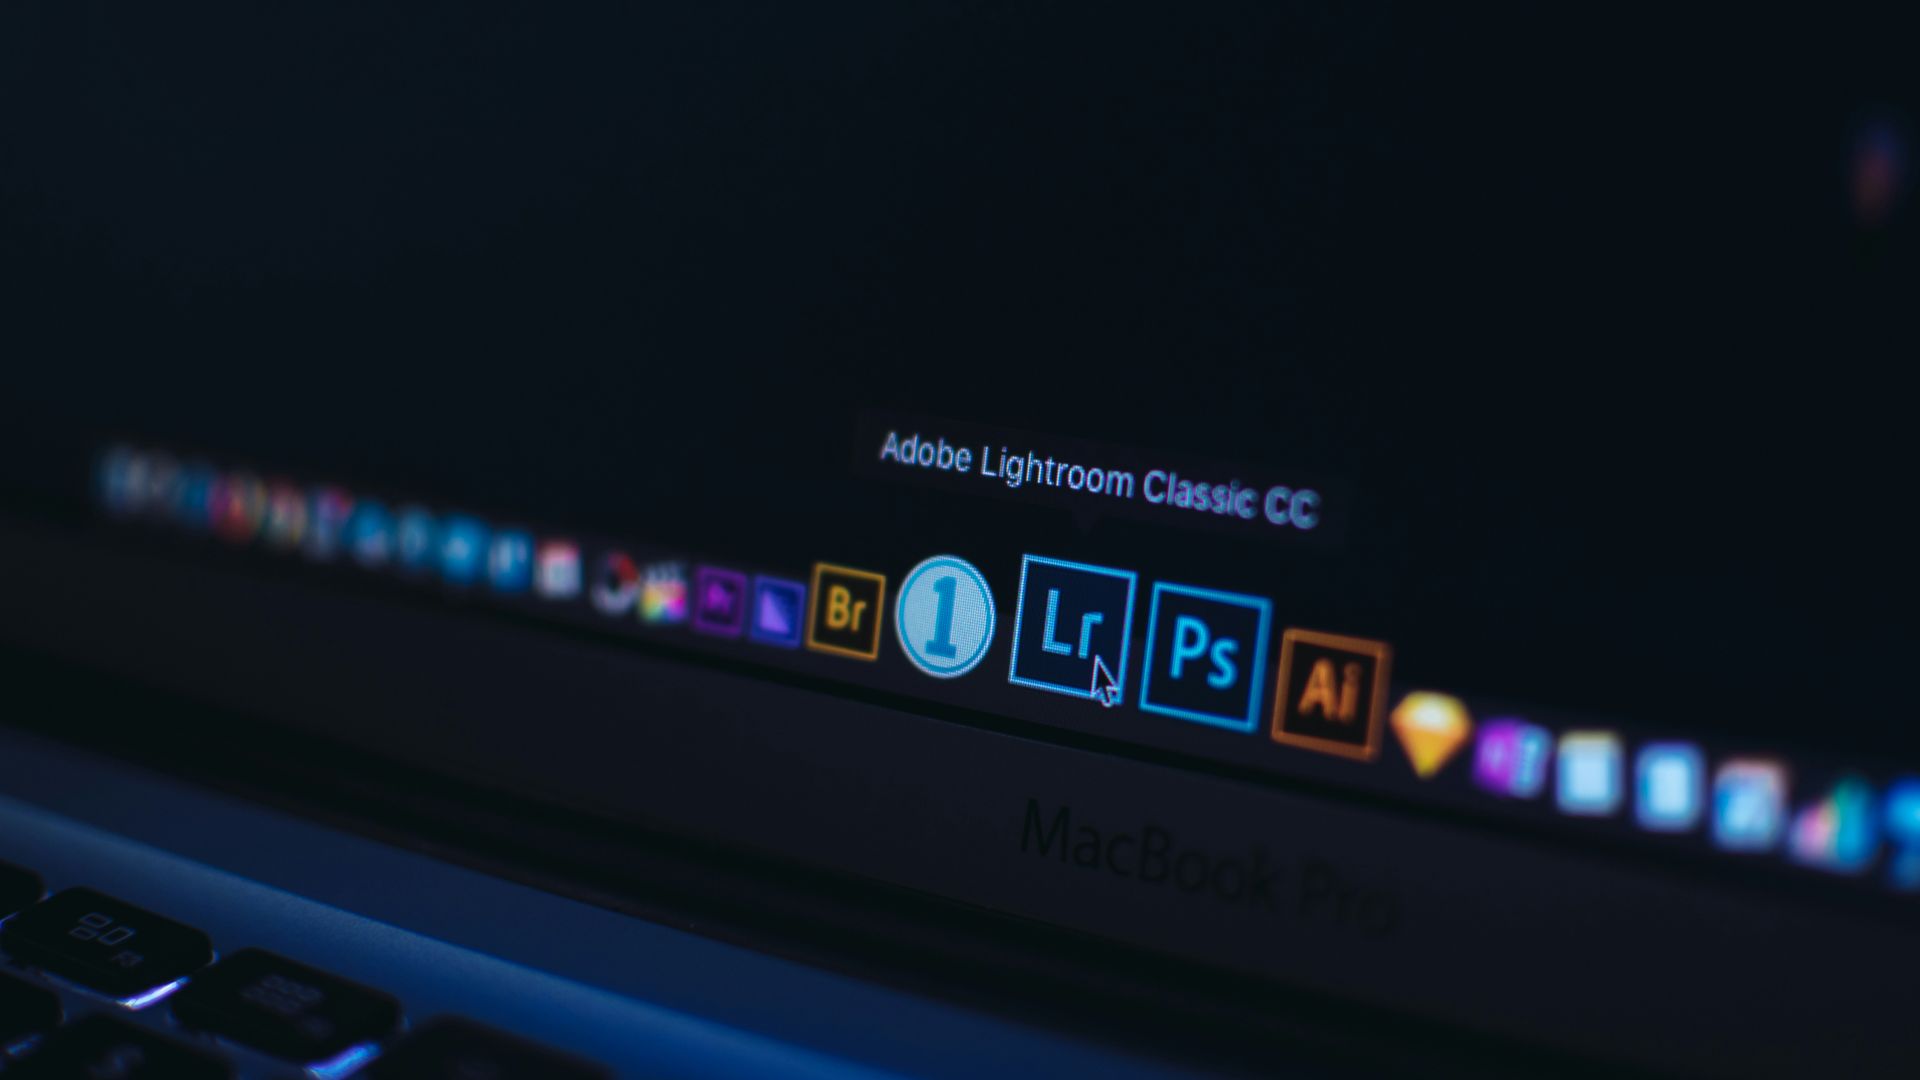 Le DOJ poursuit Adobe pour pratiques d'abonnement trompeuses